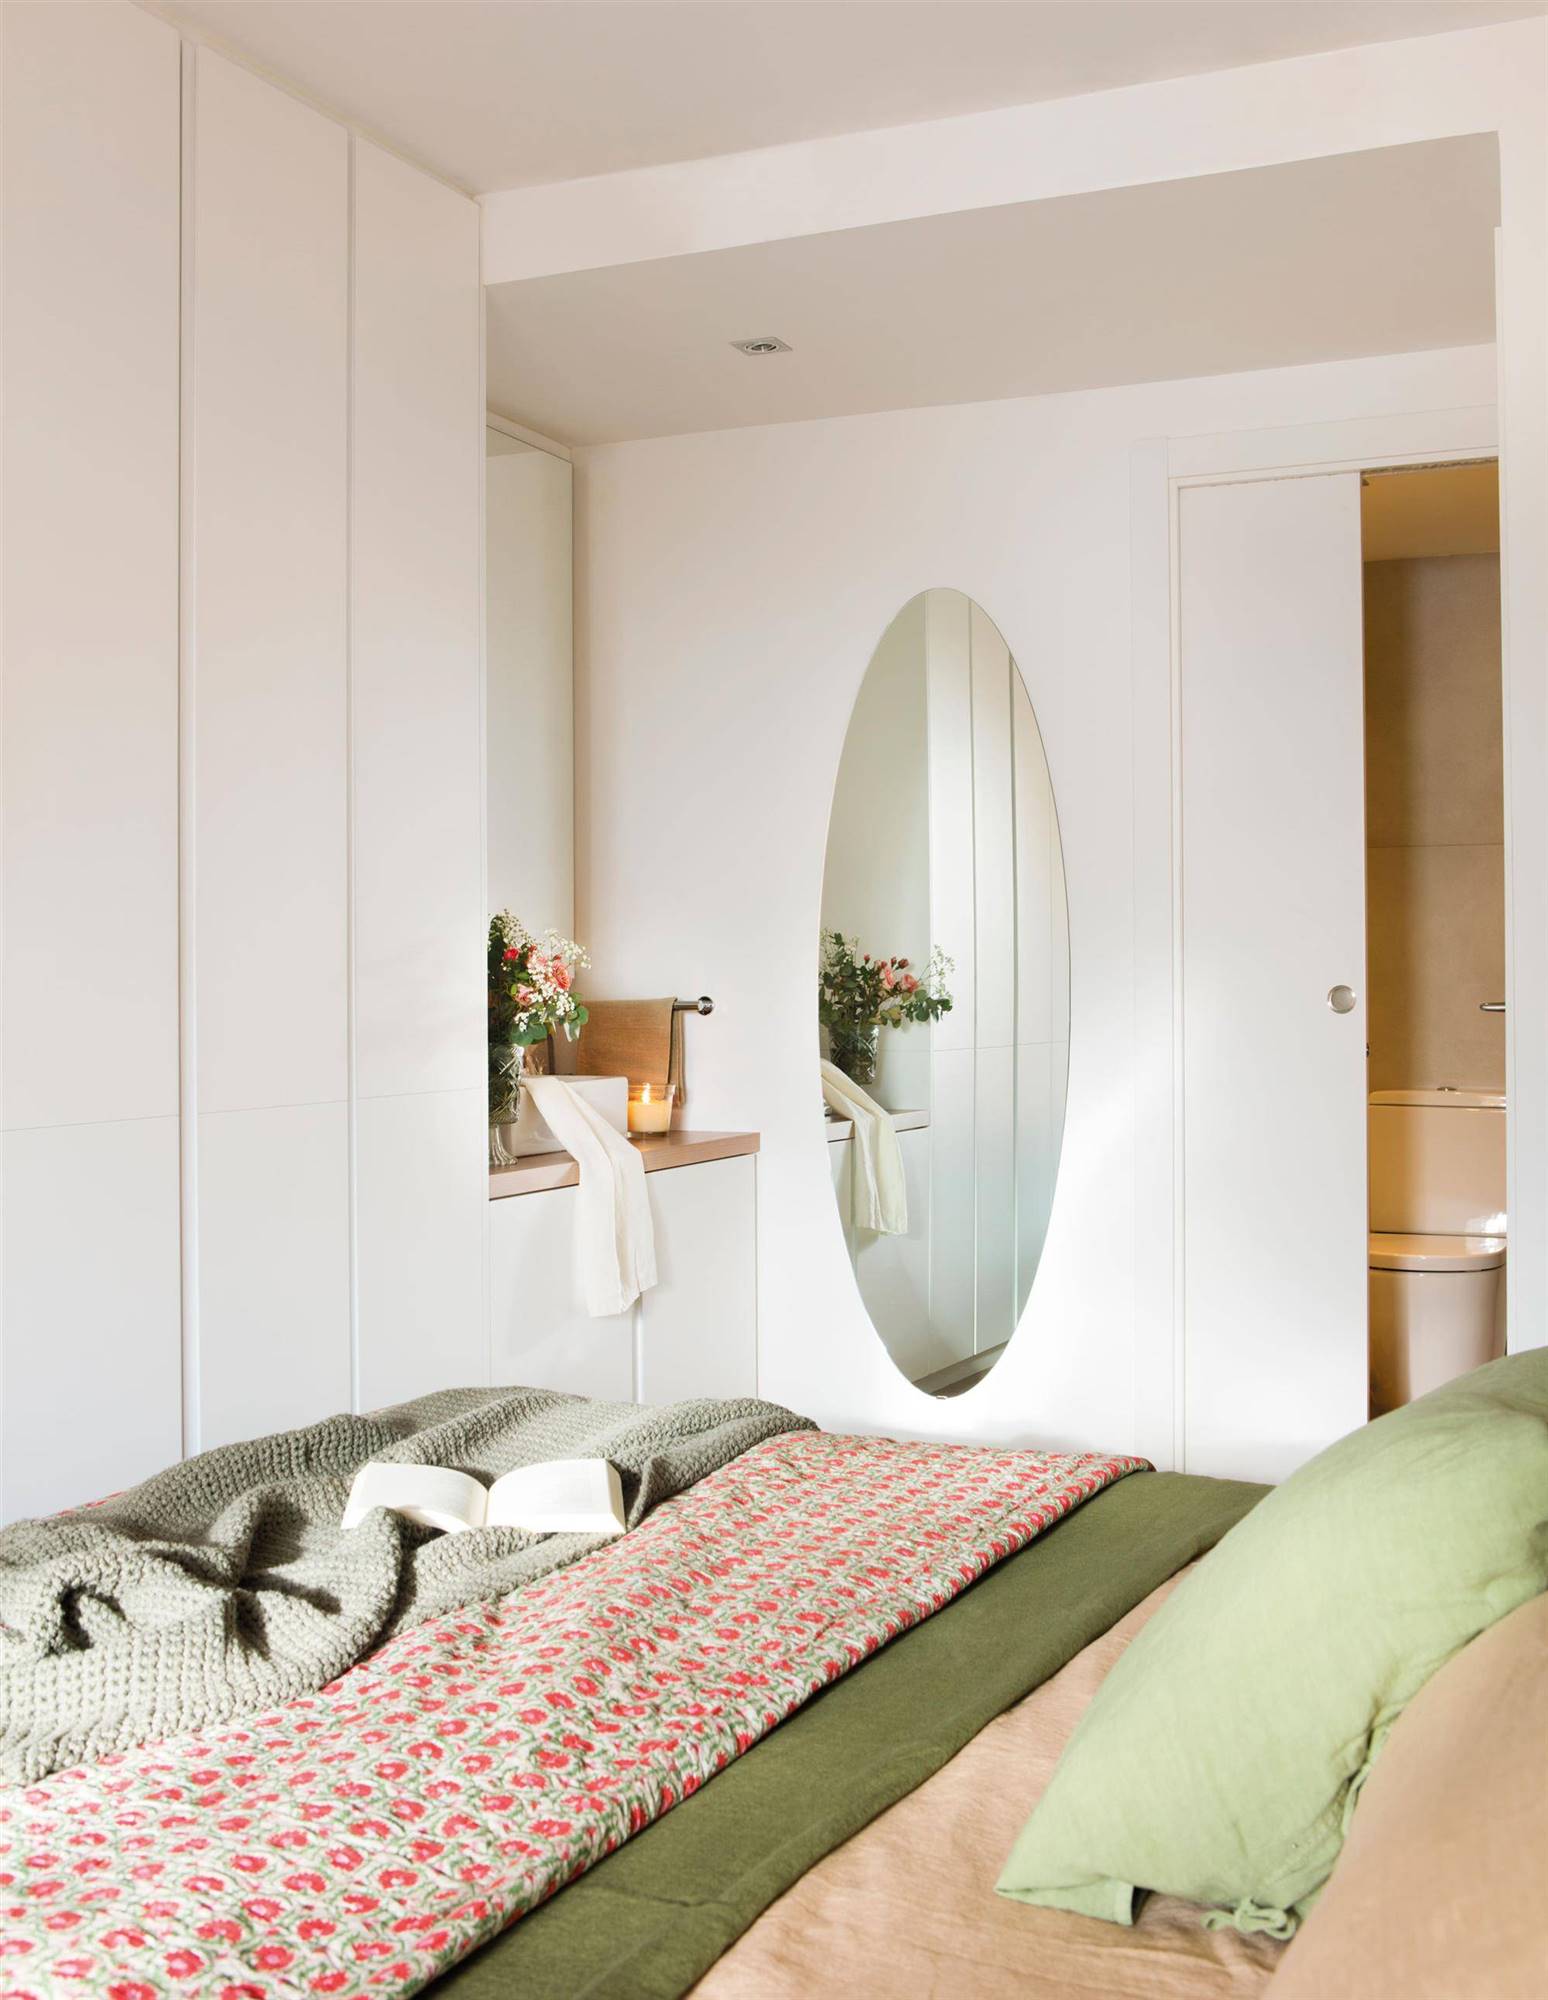 Dormitorio con espejo ovalado.